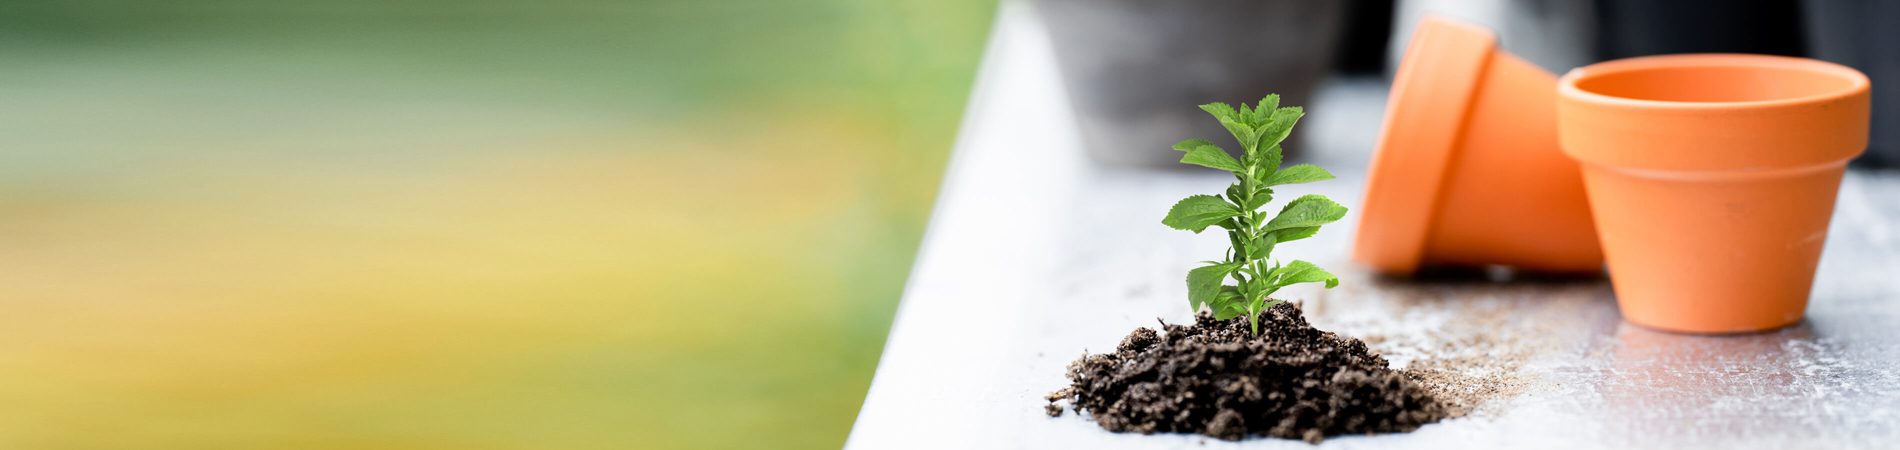 Coltivare la Stevia - coltivazione, cura, raccolta e uso...